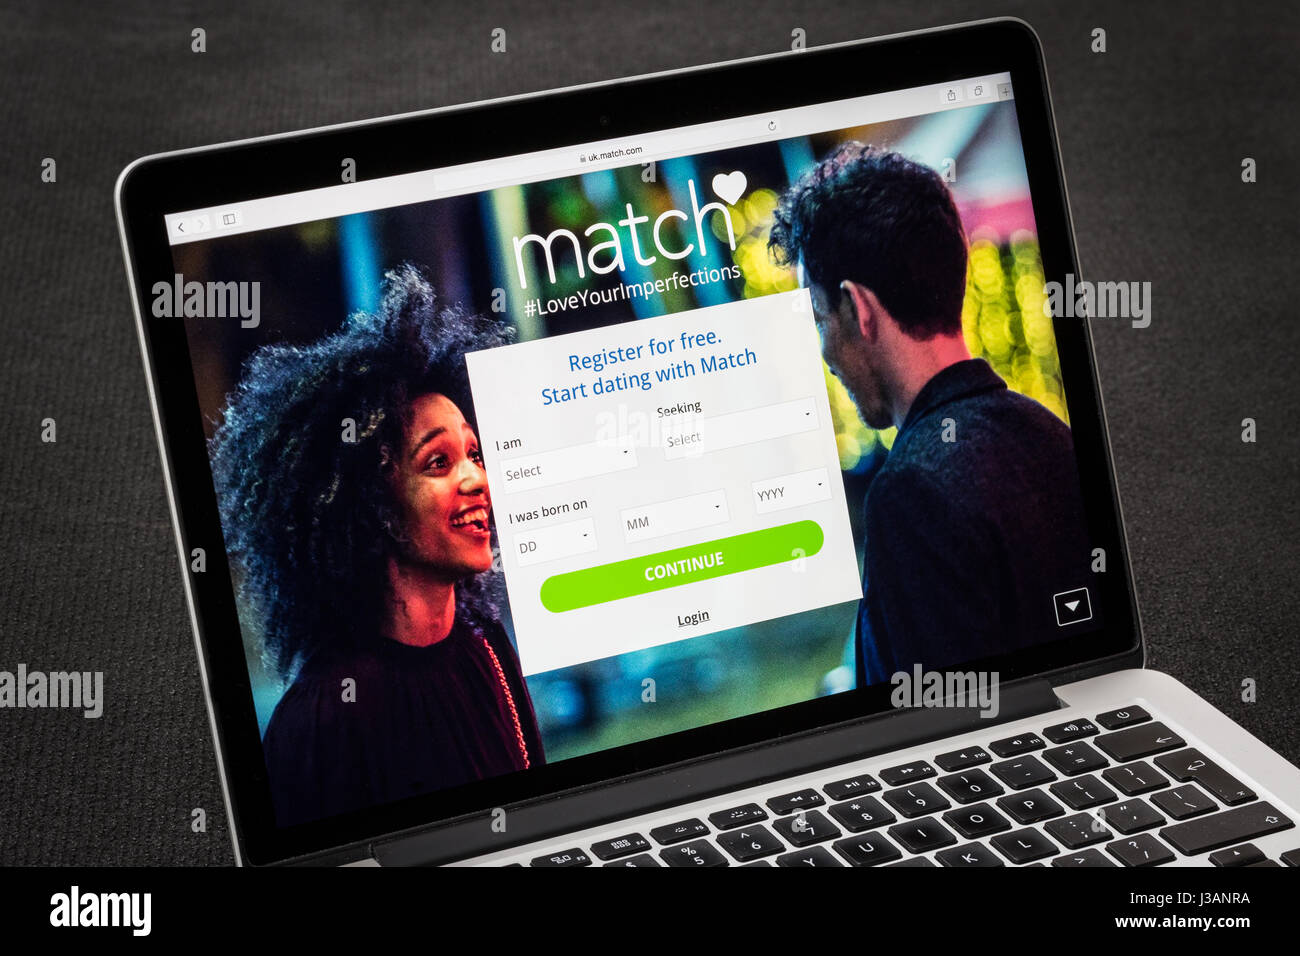 Match online dating website ( match.com ) Stock Photo